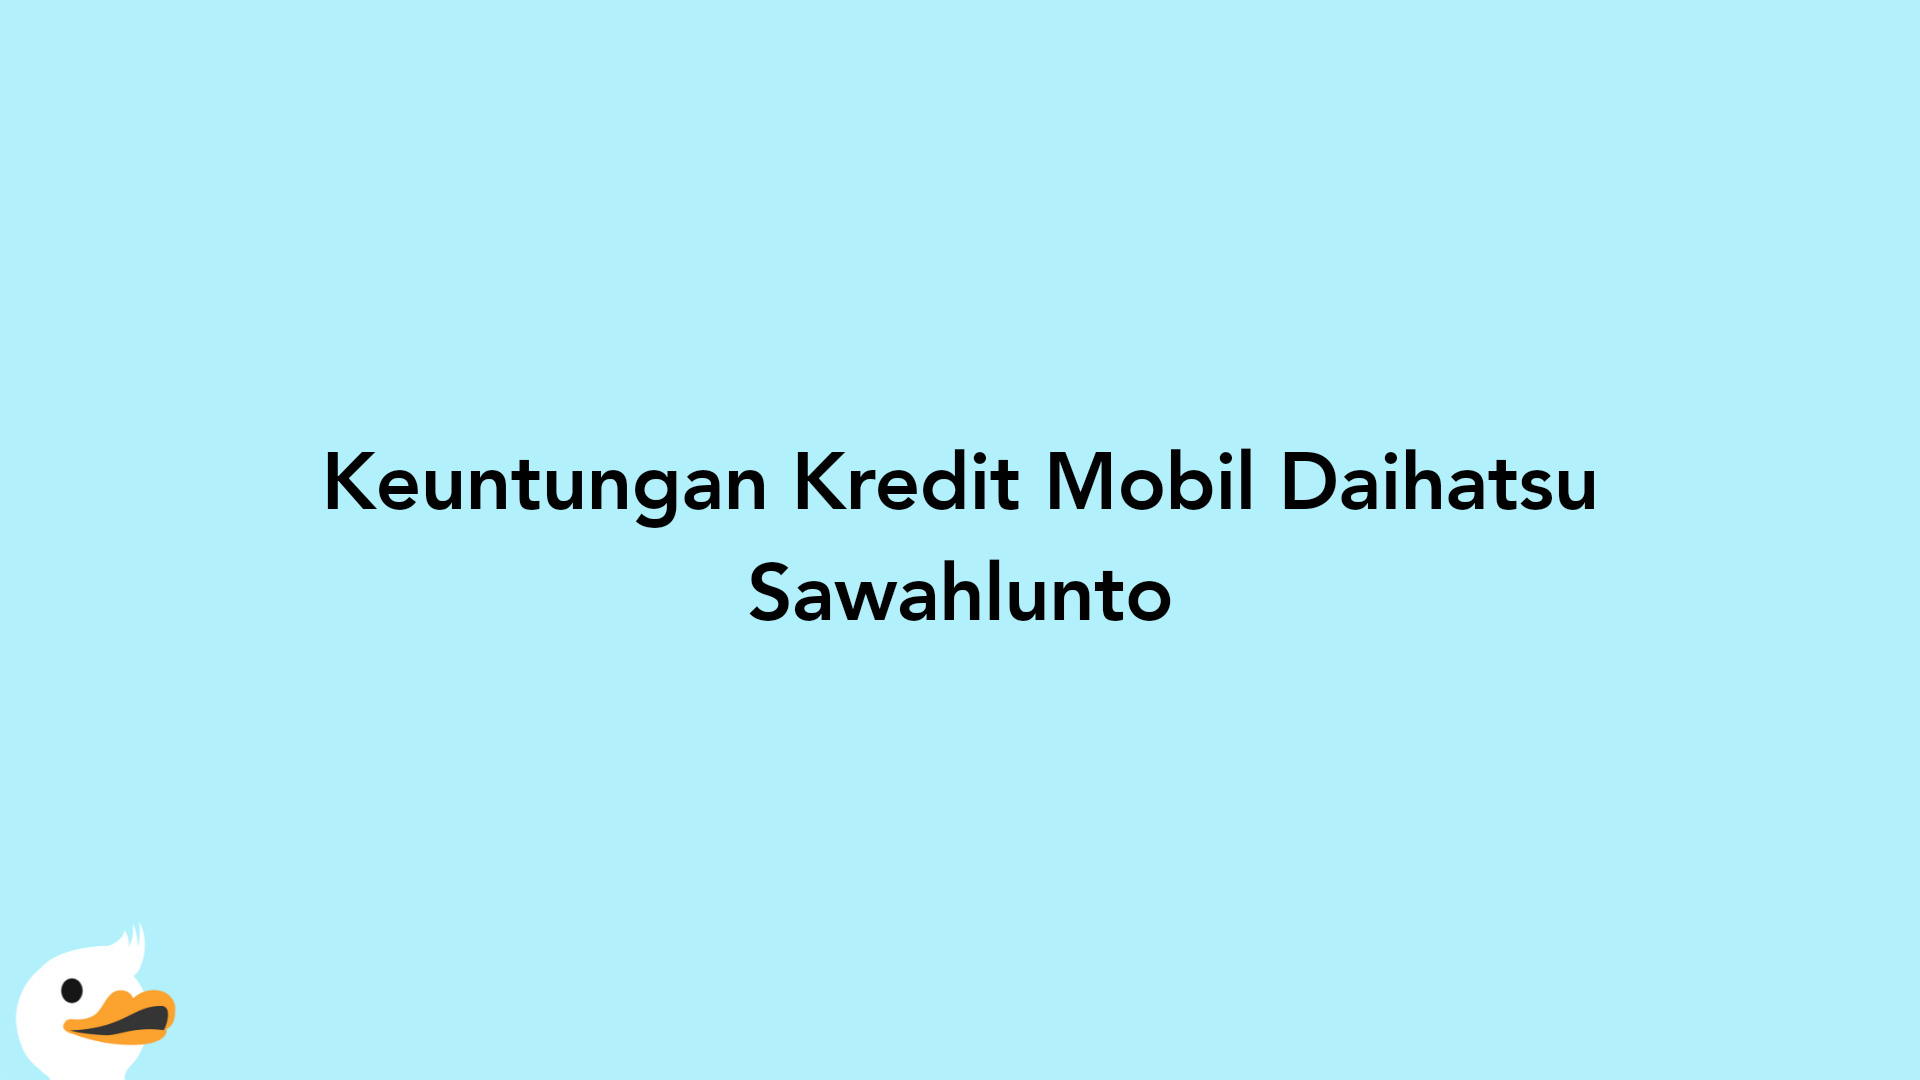 Keuntungan Kredit Mobil Daihatsu Sawahlunto